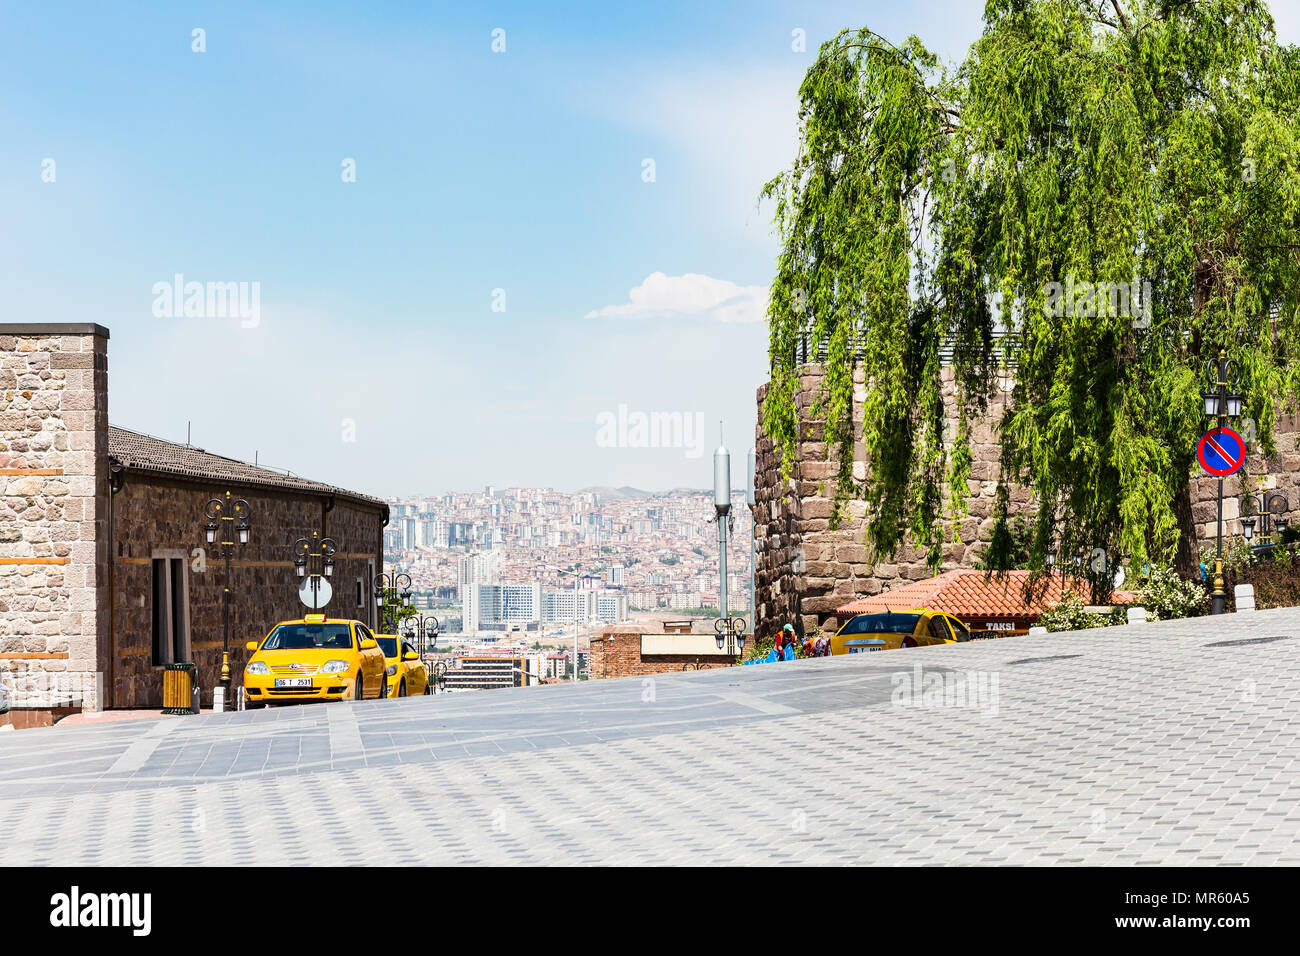 ANKARA, TURKEY - MAY 2, 2018: taxi parking and view of Ankara city from Gozcu square near Old Ankara Castle. Ankara is the capital of the Republic of  Stock Photo